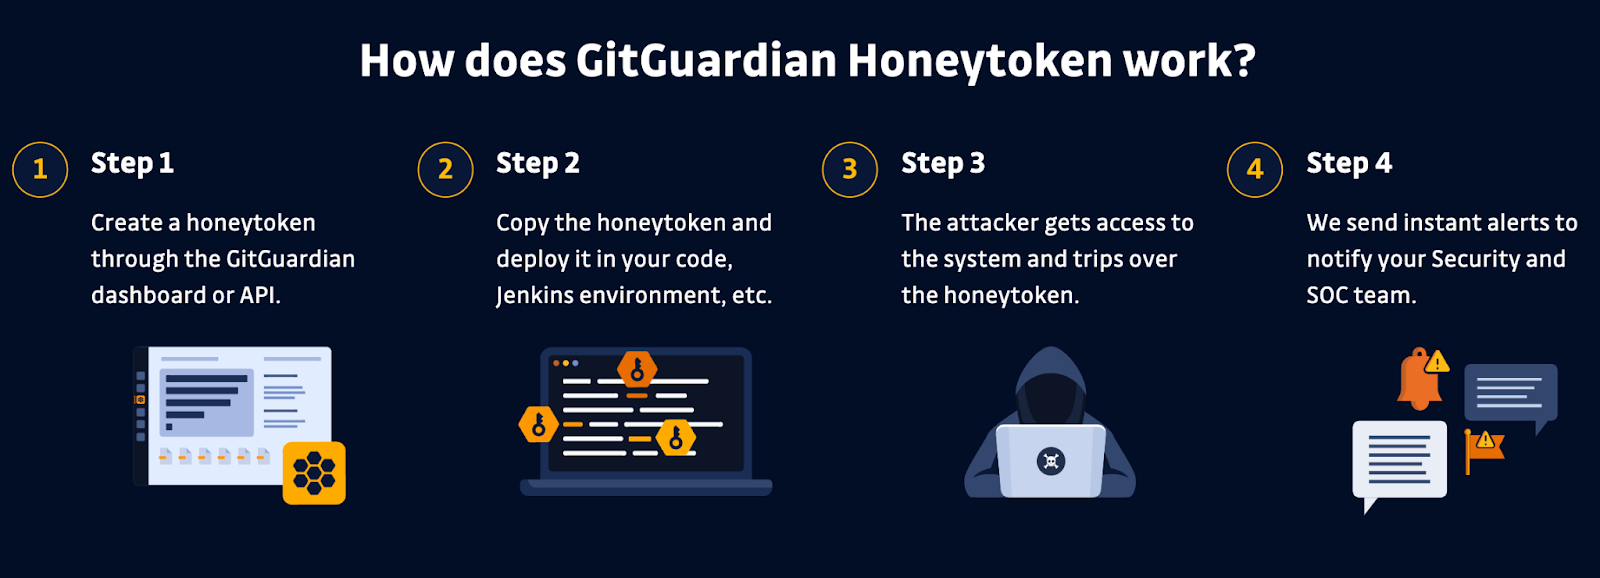 How does GitGuardian Honeytoken Work? infographic